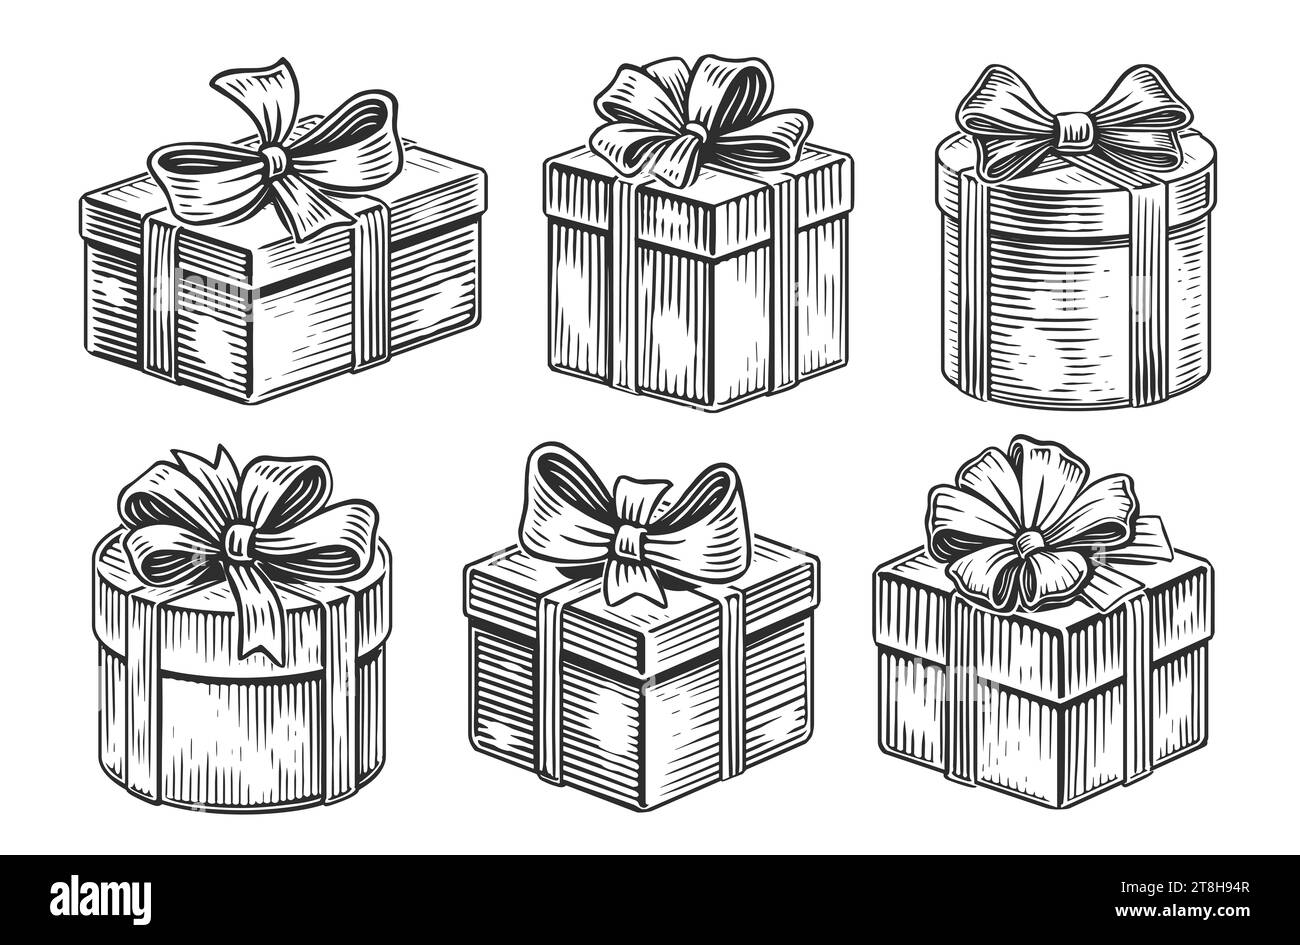 Cadeau de Noël ou boîte de cadeau d'anniversaire avec noeud de ruban. Illustration dessinée à la main Banque D'Images